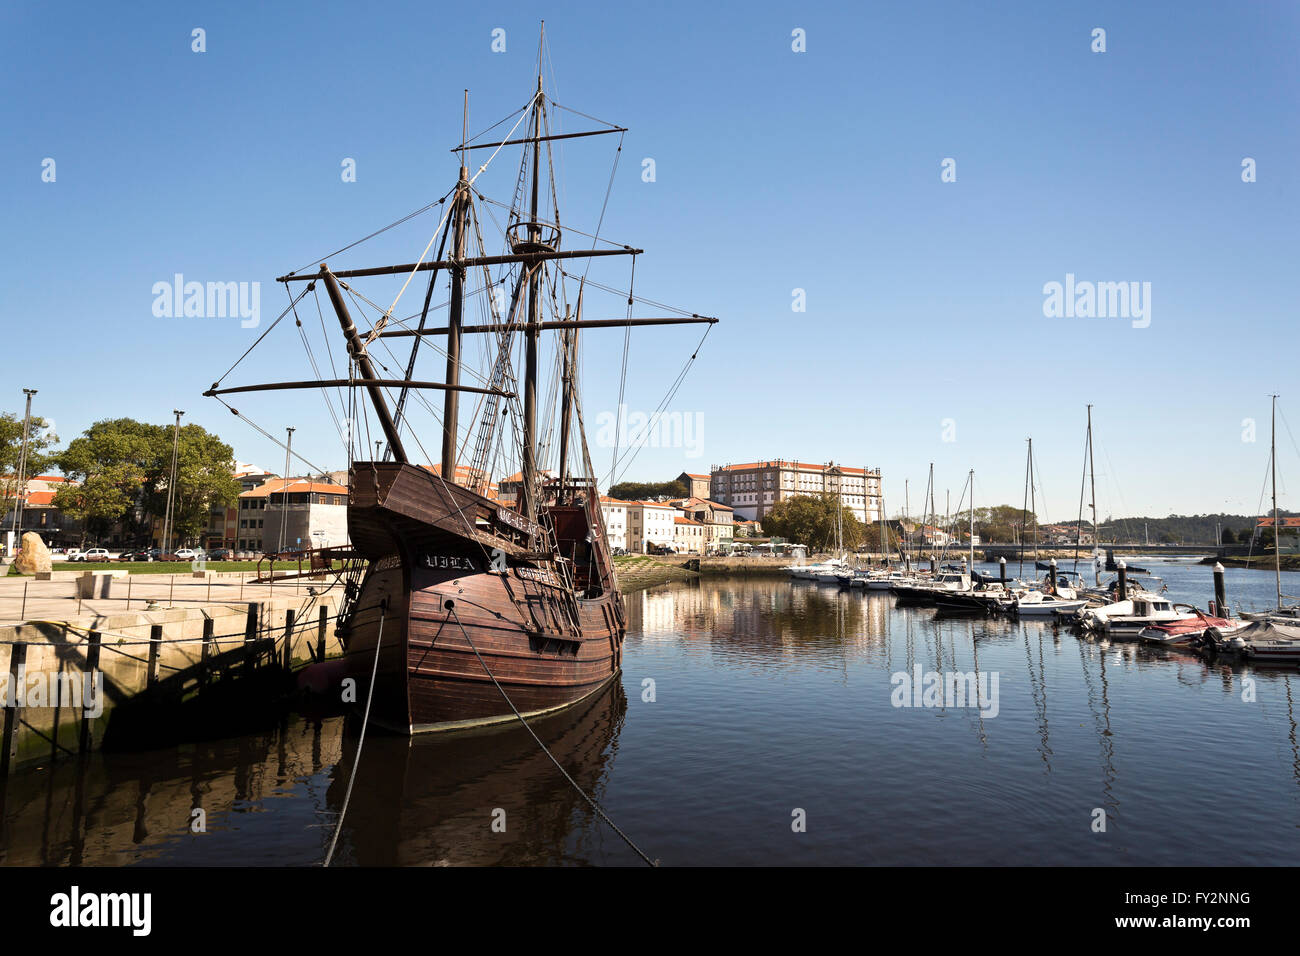 Réplique d'une caravelle, une petite et très maniable sailing ship développé au 15ème siècle par les Portugais pour explorer al Banque D'Images